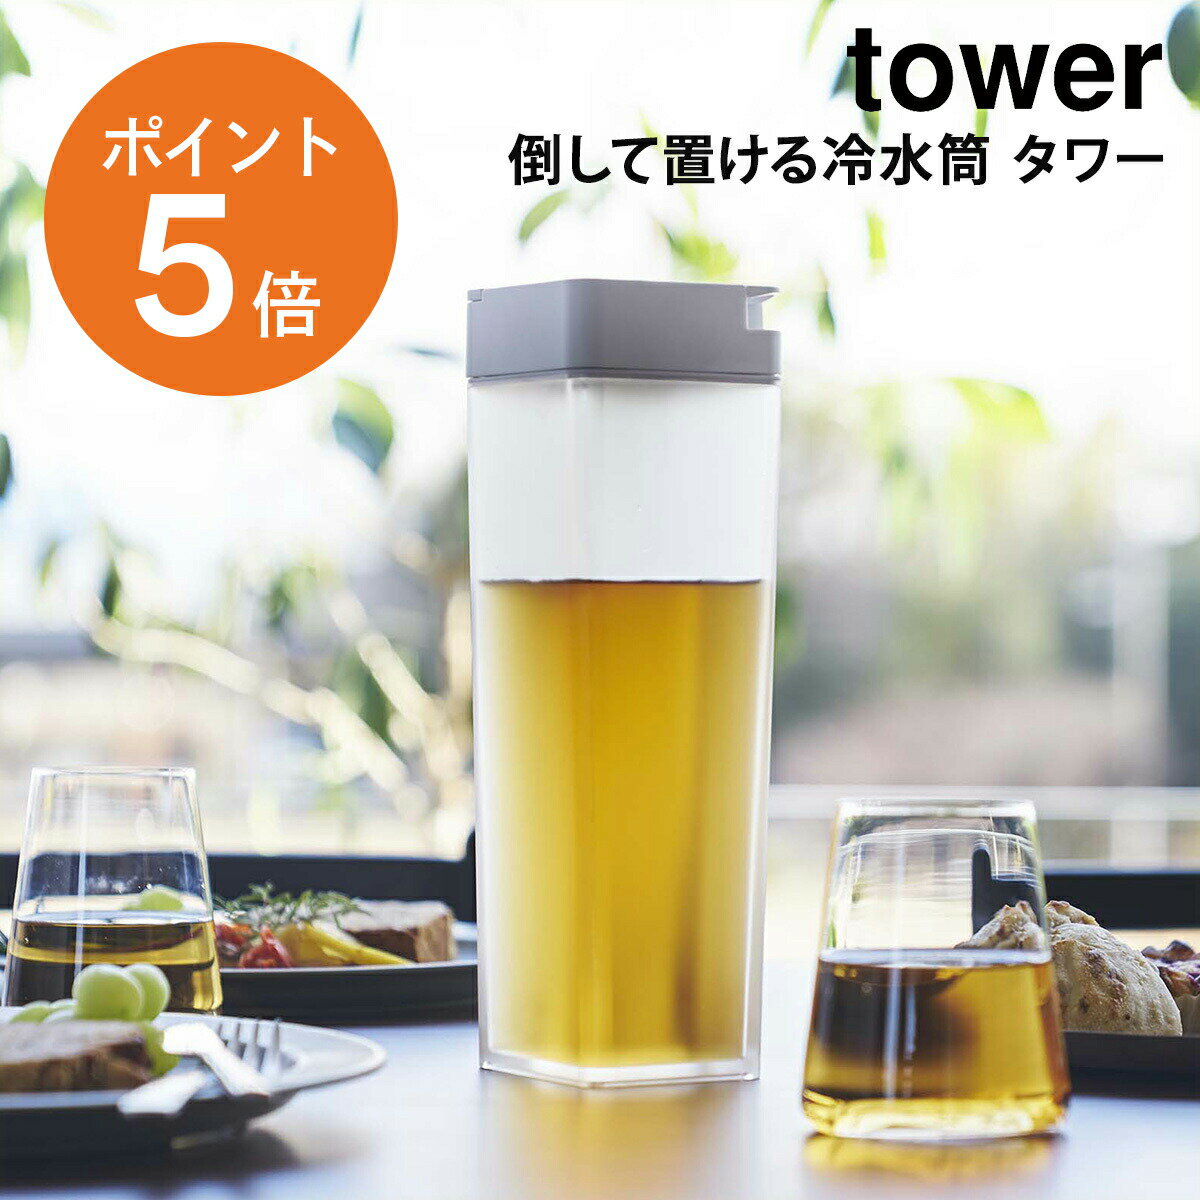 [ 倒して置ける冷水筒 タワー ] 山崎実業 tower 麦茶ポット 冷水筒 縦置き 横置き 水差し ...